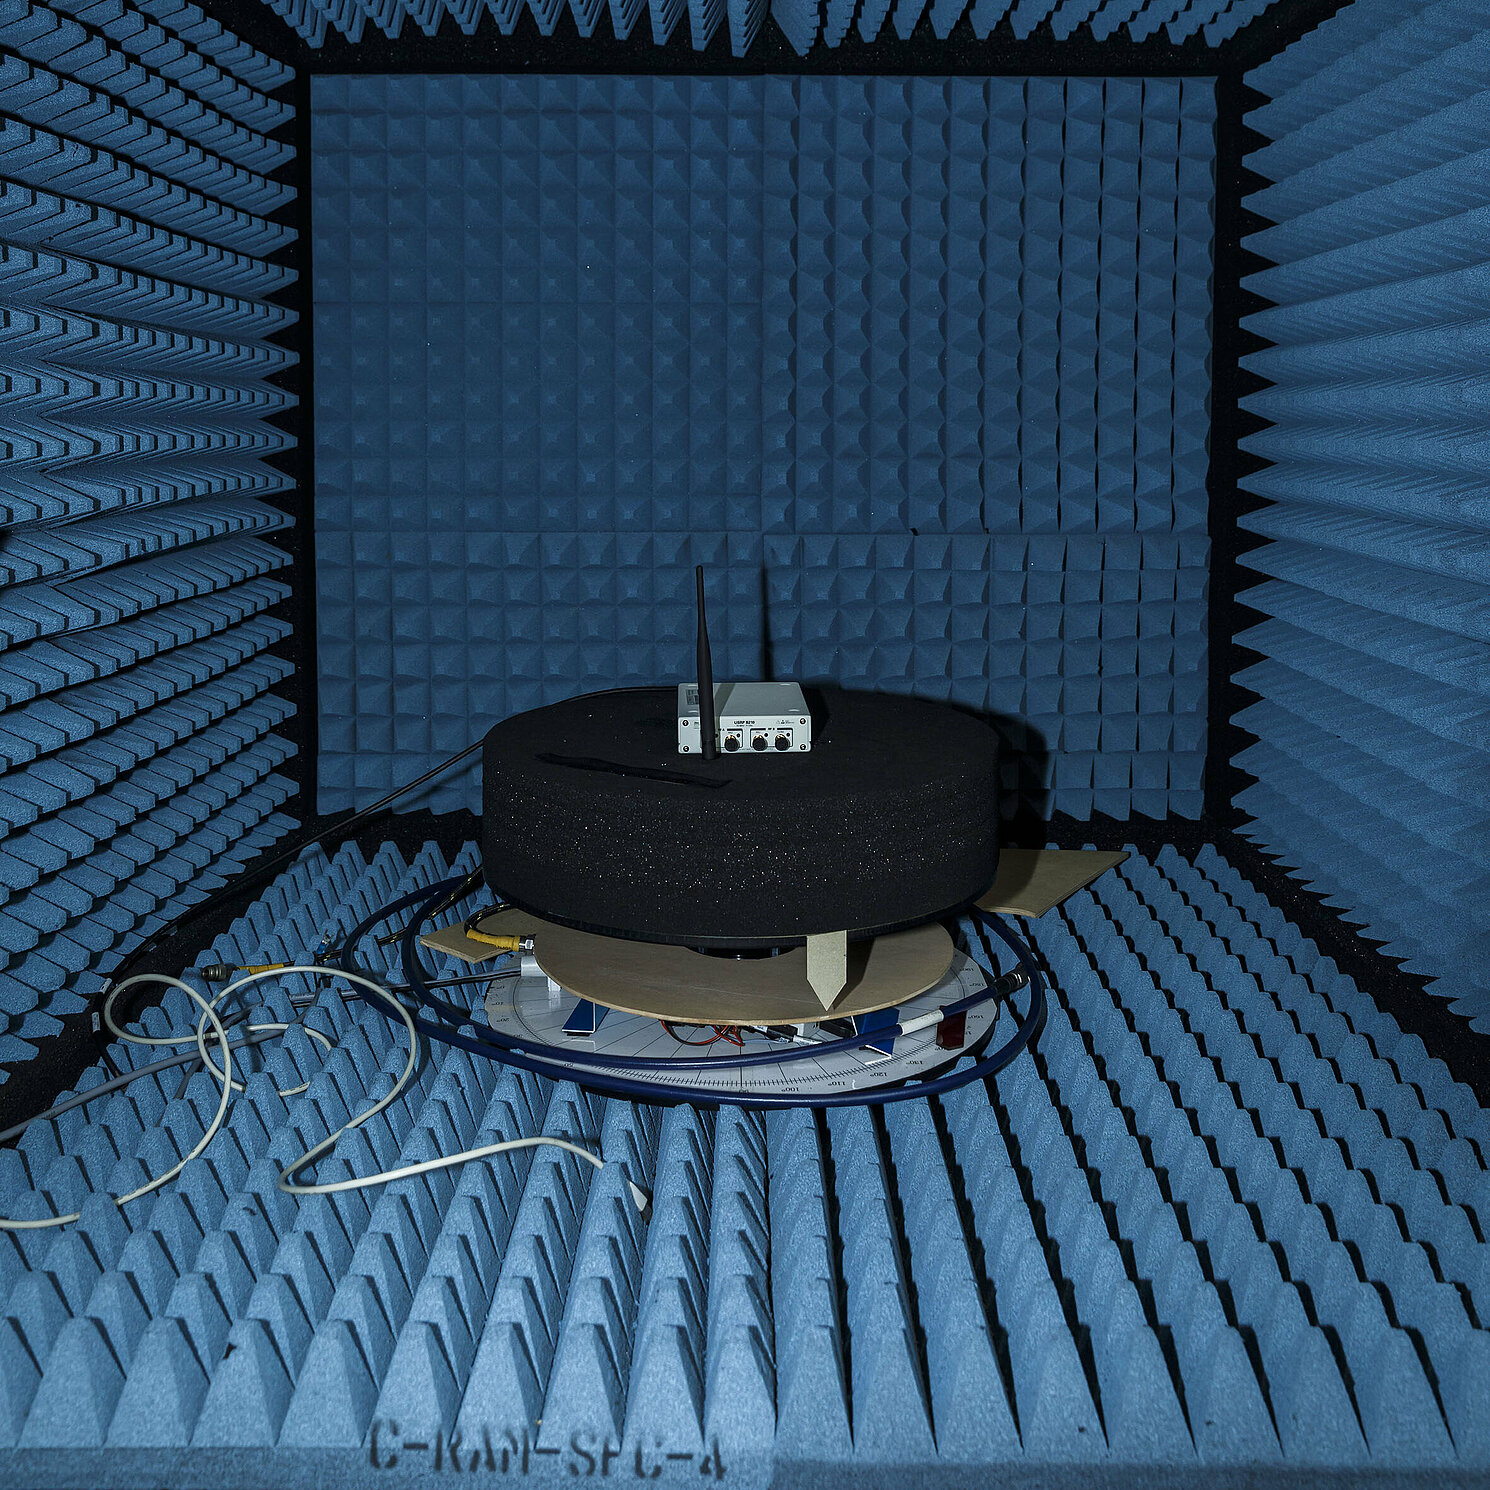 Hochfrequenz Sende-/Empfangseinheit in einer Antennenmesskkammer, die an fünf Seiten mit reflexionsdämpfendem Material ausgekleidet ist.